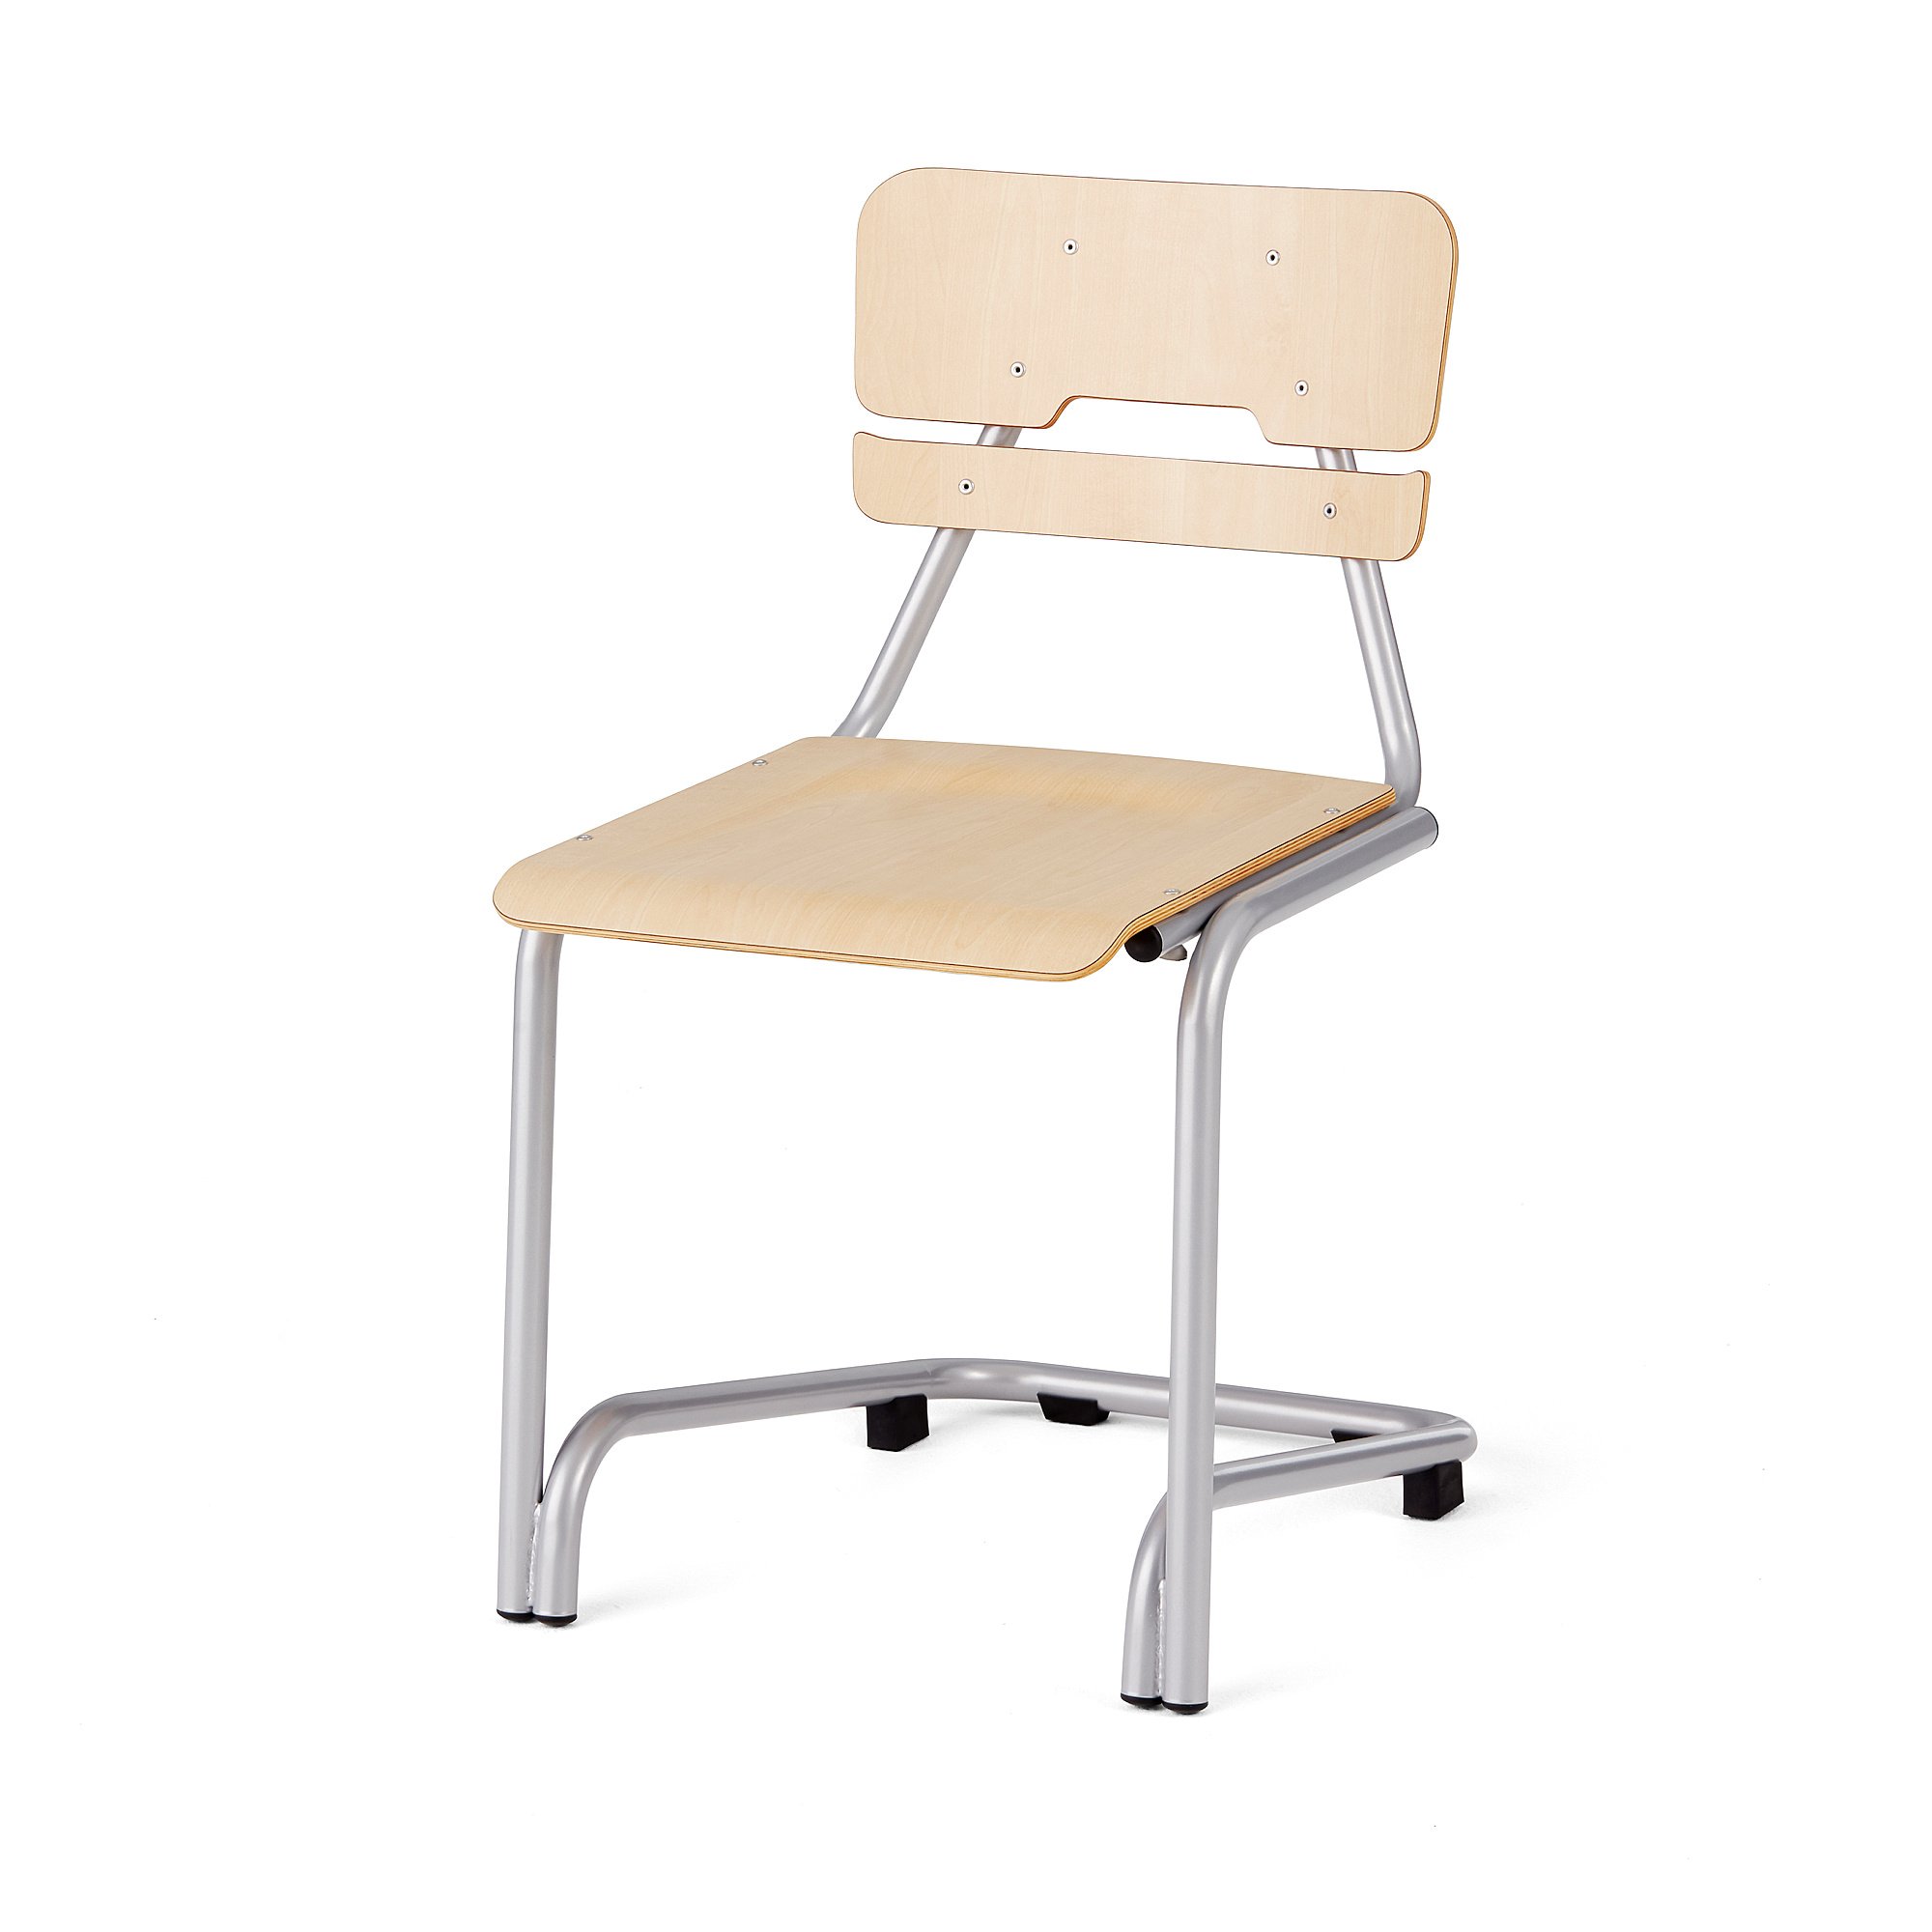 Školní židle DOCTRINA, výška 450 mm, bříza